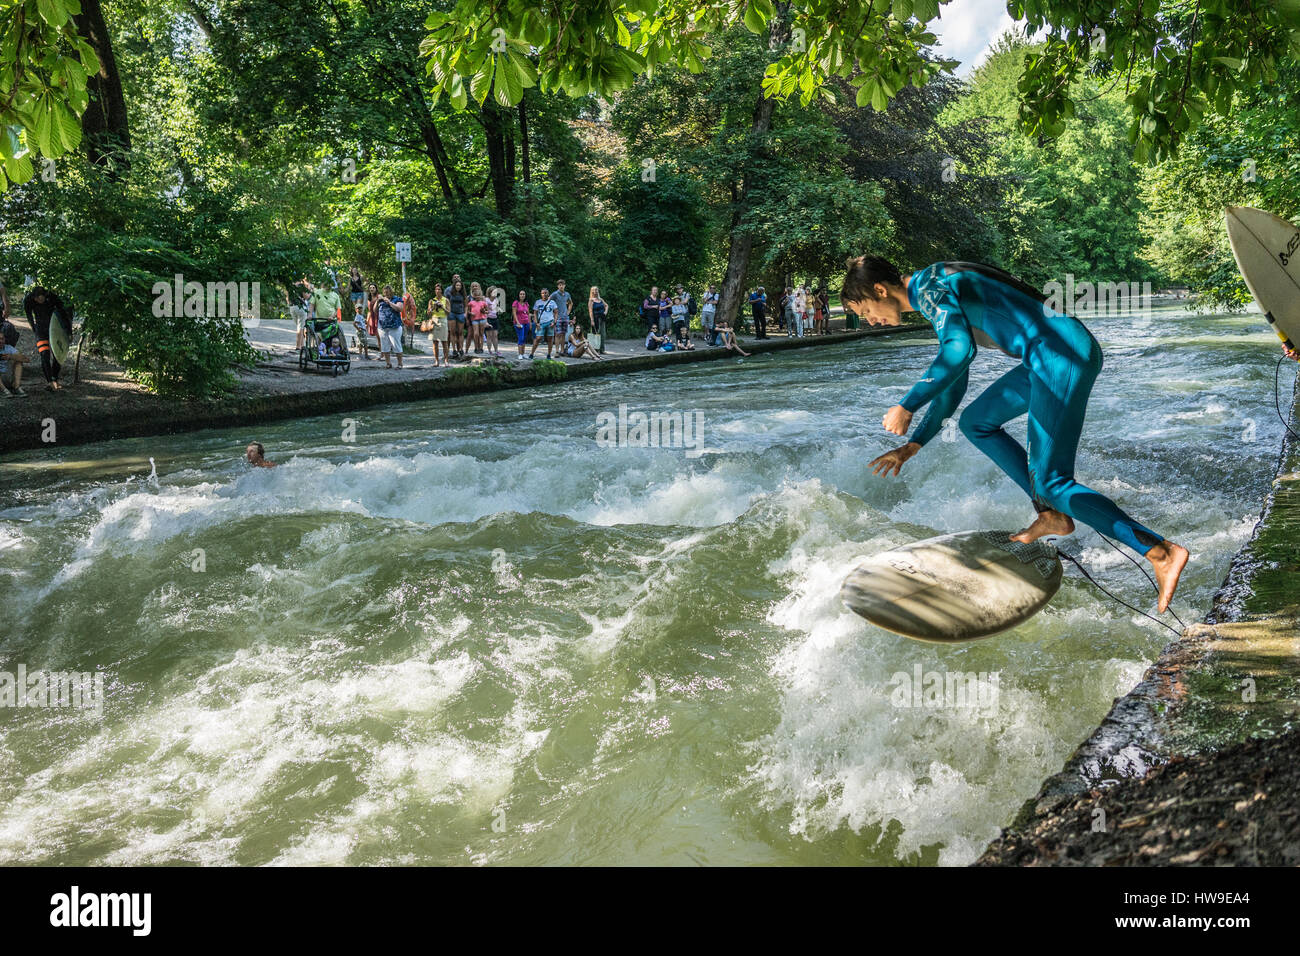 Surfing the Eisbach river in Englischer Garten, Munich, Germany Stock Photo